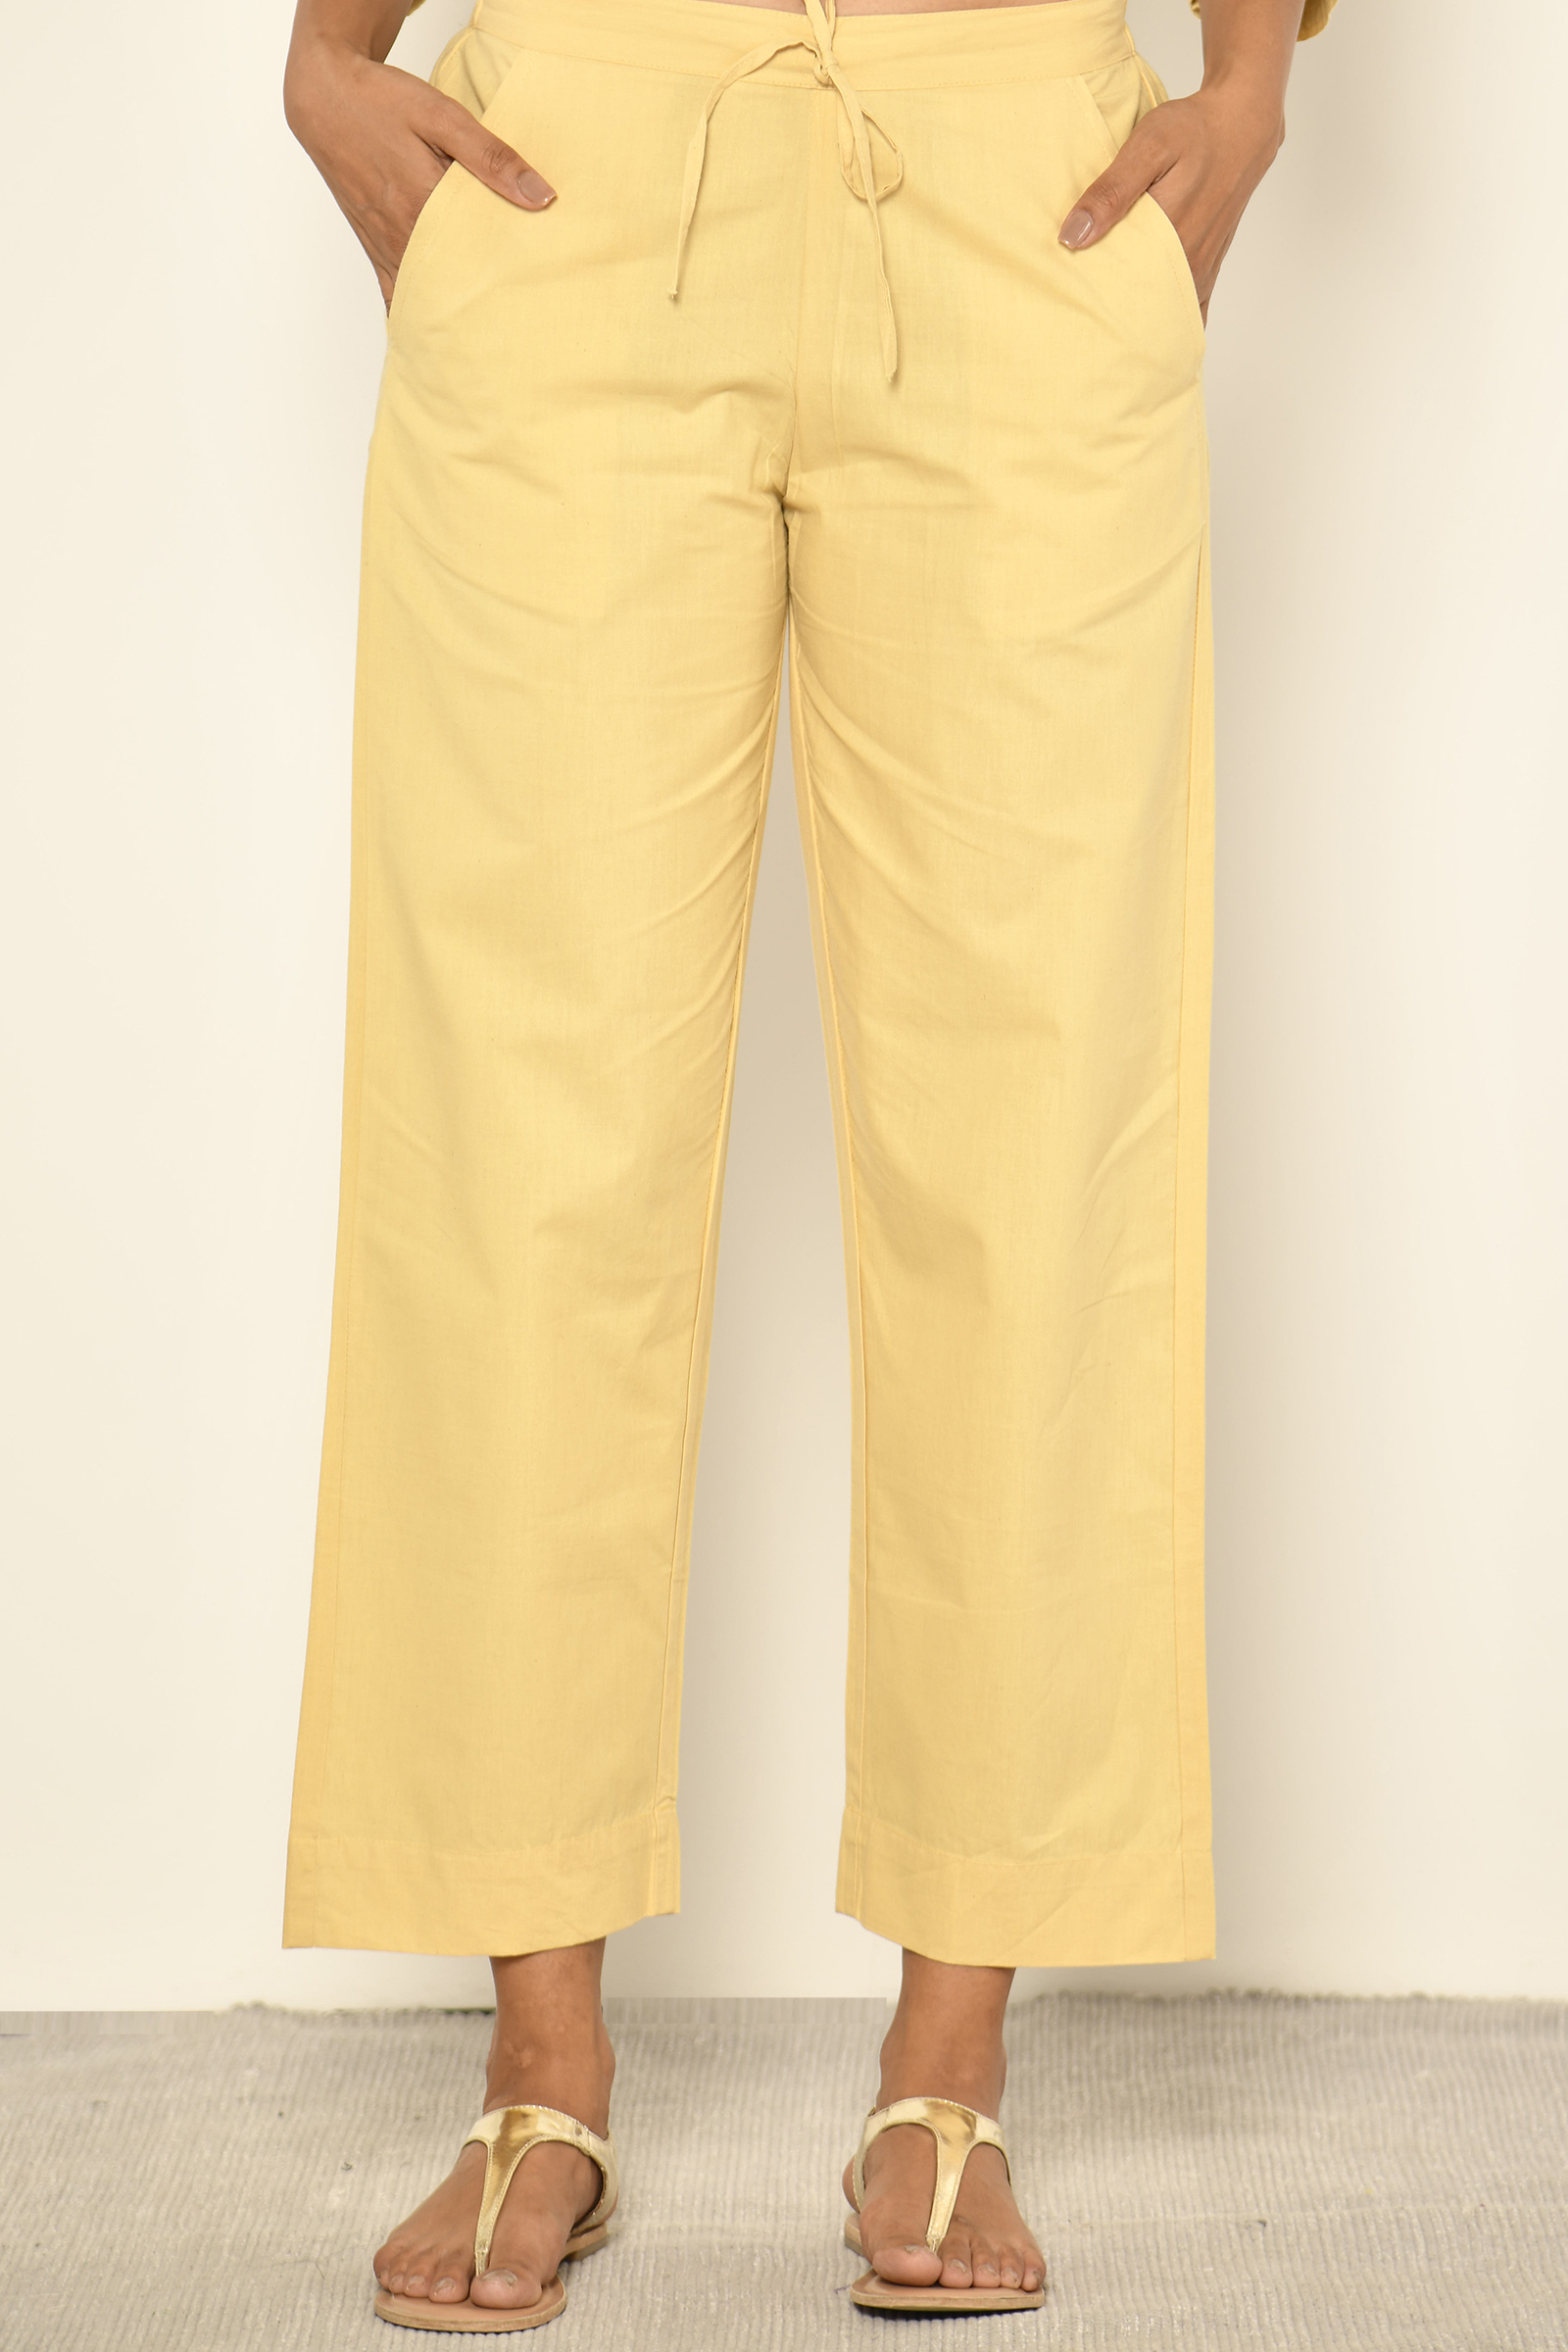 Marco Pescarolo Cotton Blend Stretch Denim Pant in Light Yellow – Stanley  Korshak